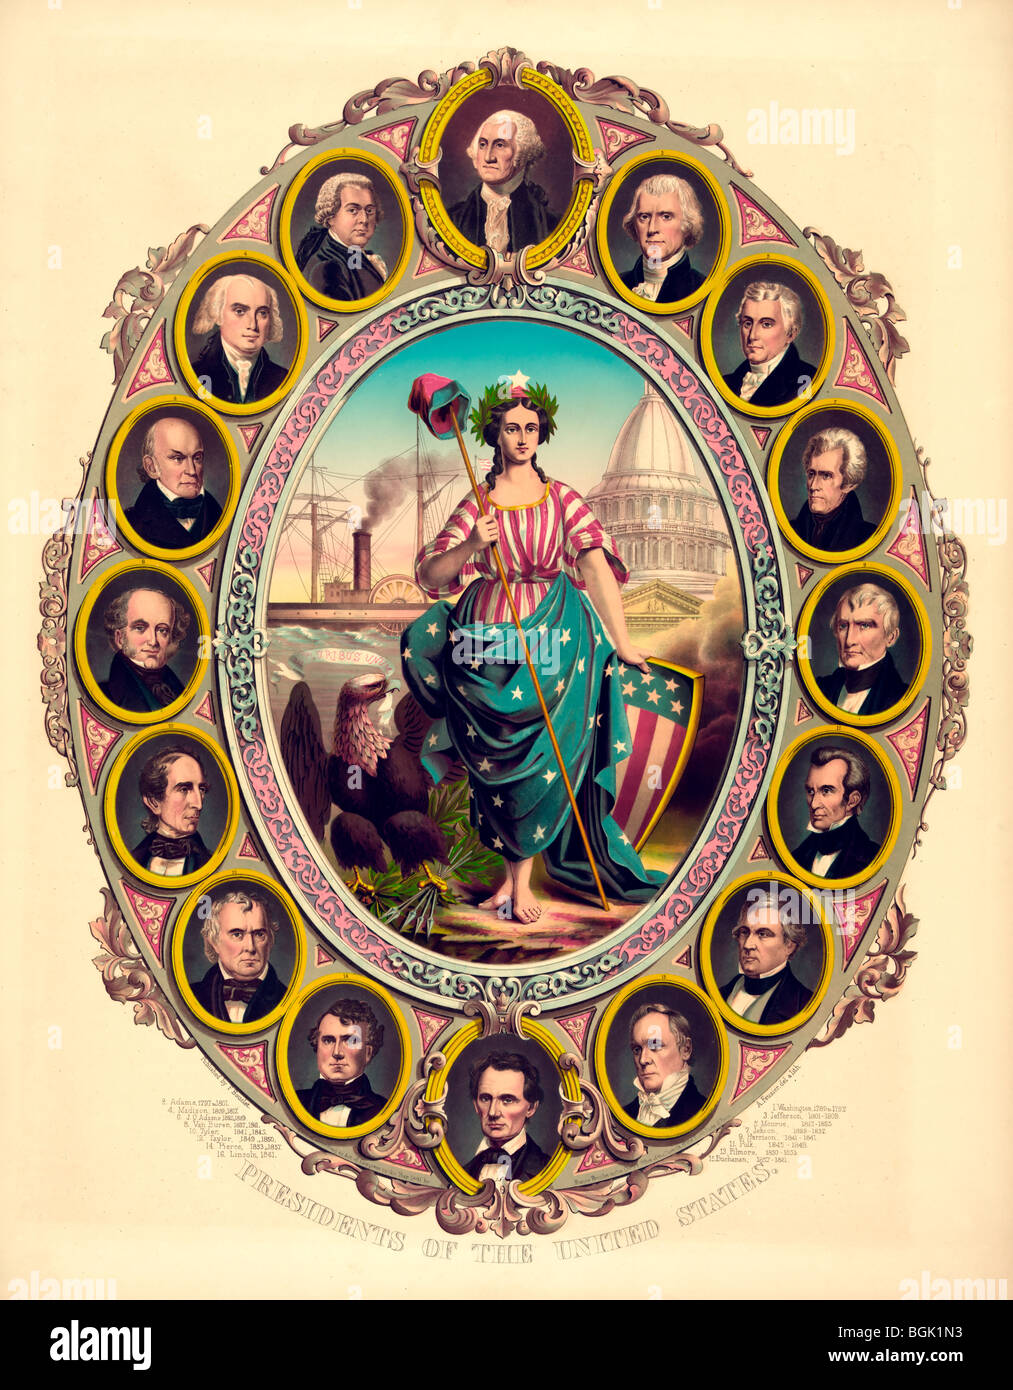 Presidenti degli Stati Uniti da Washington a Lincoln Foto Stock